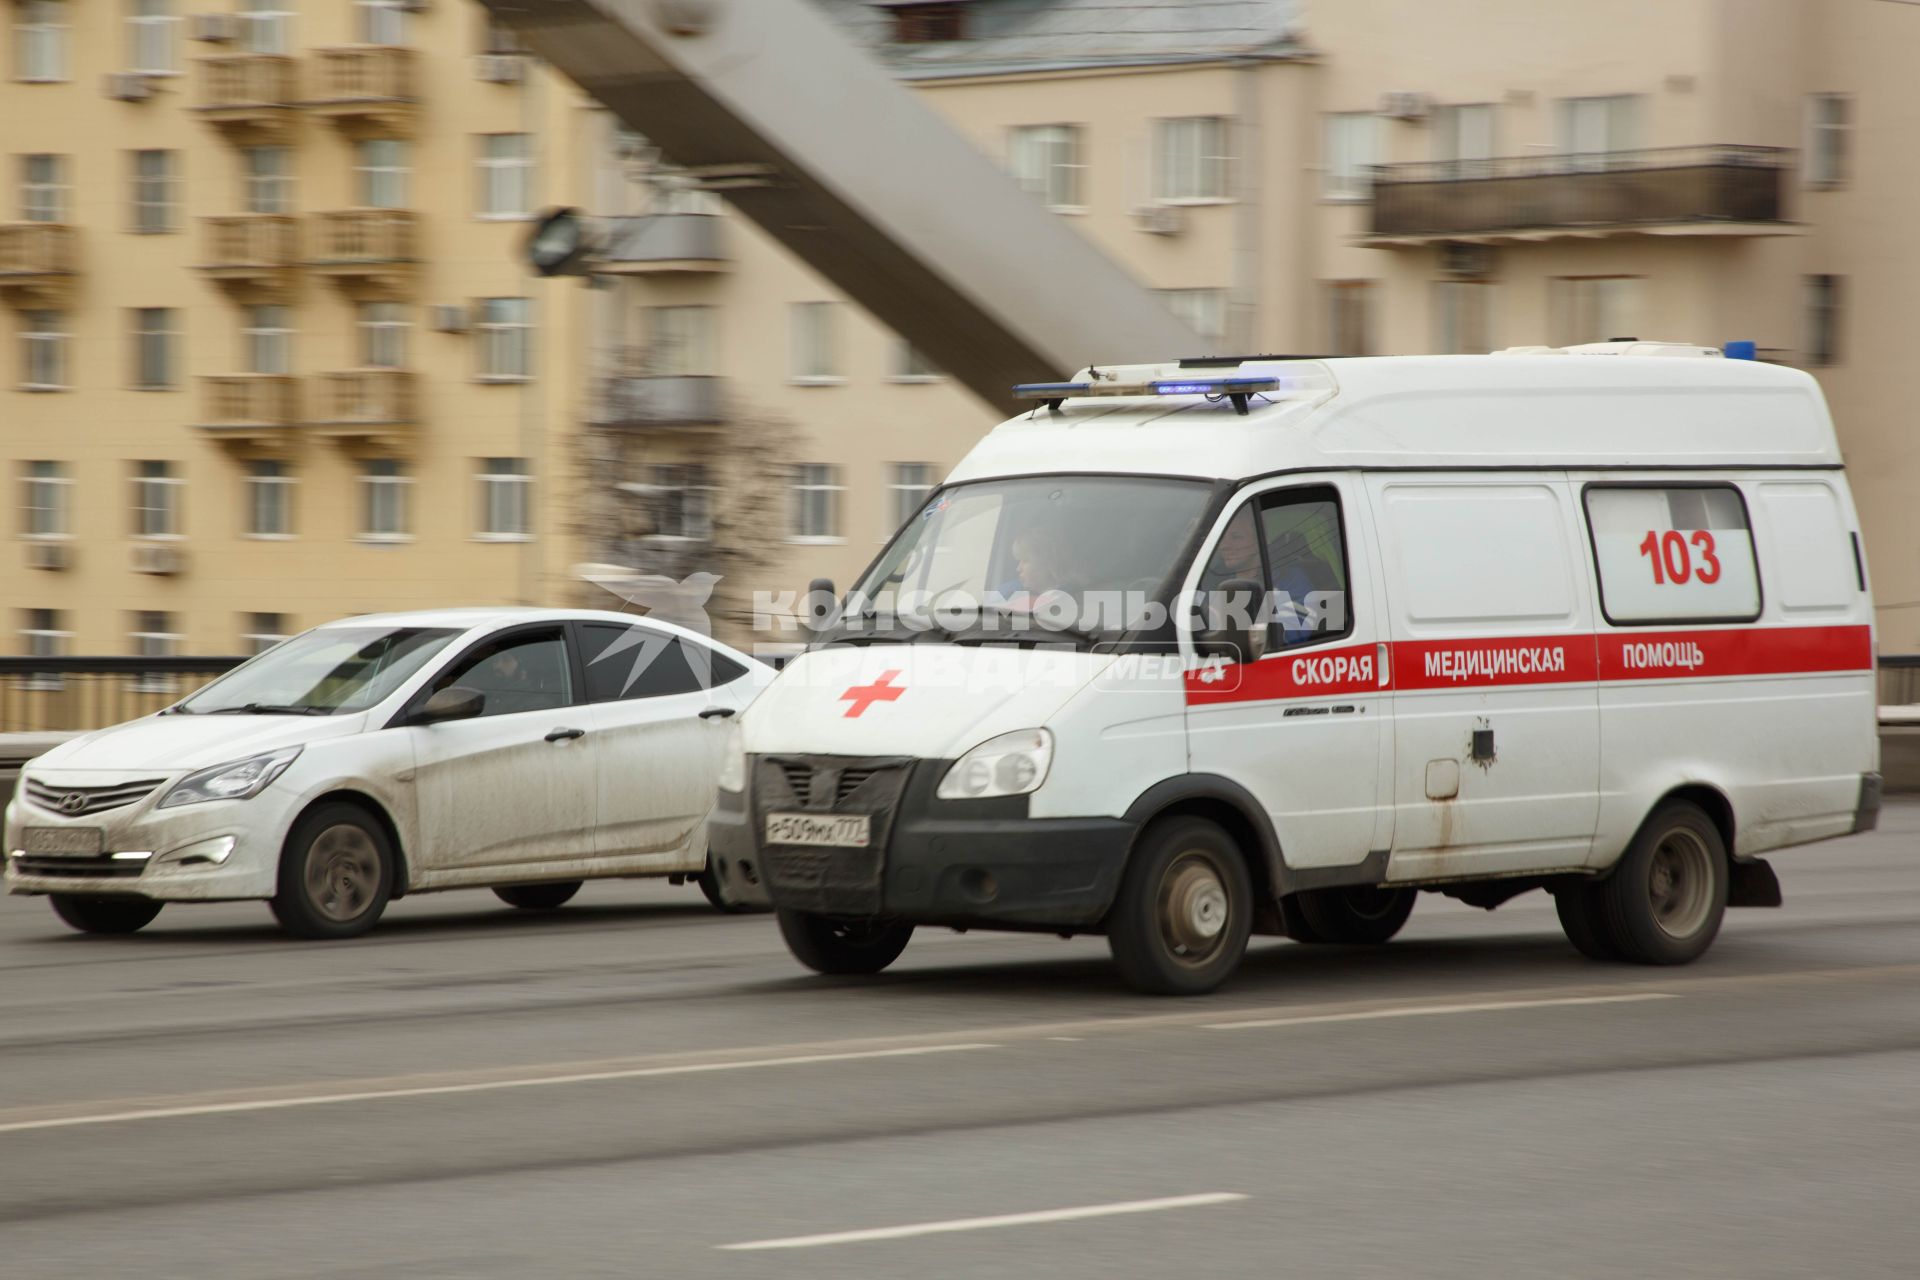 Москва.  Автомобиль скорой медицинской помощи на одной из улиц города.